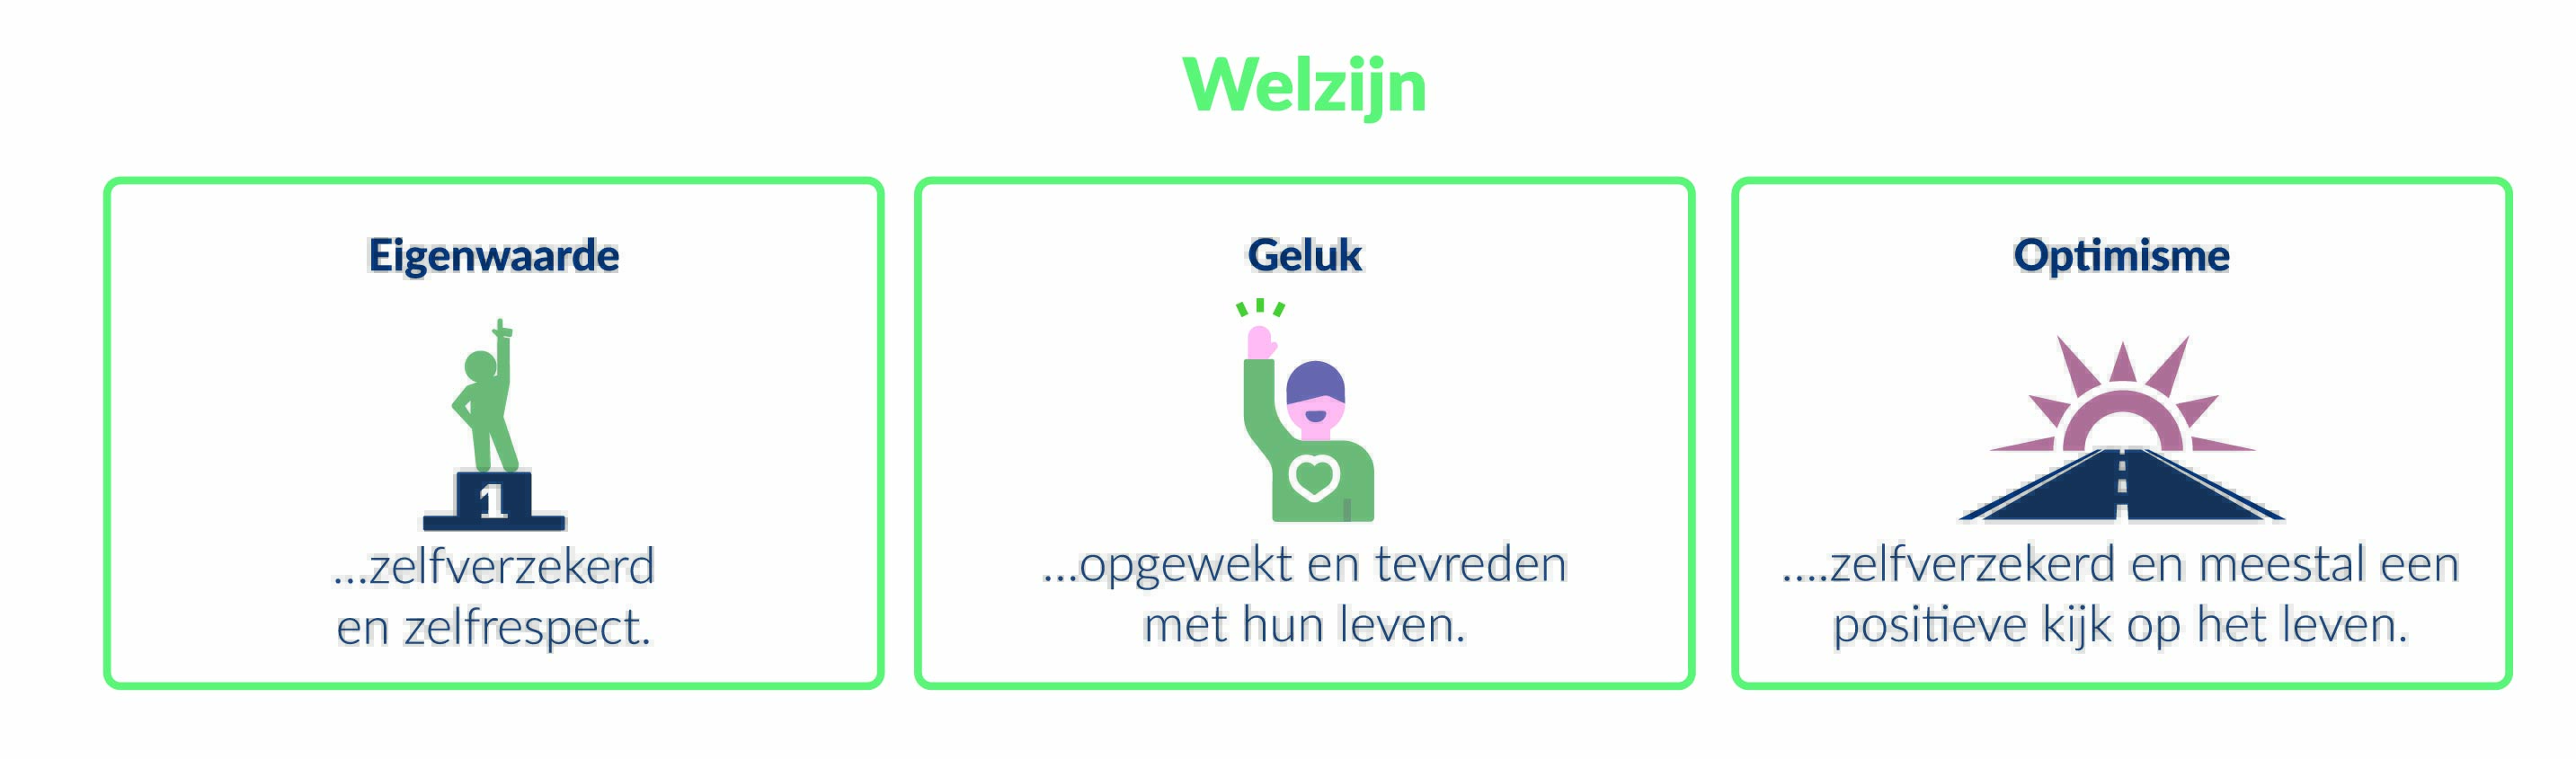 wellbeing-NL-r1